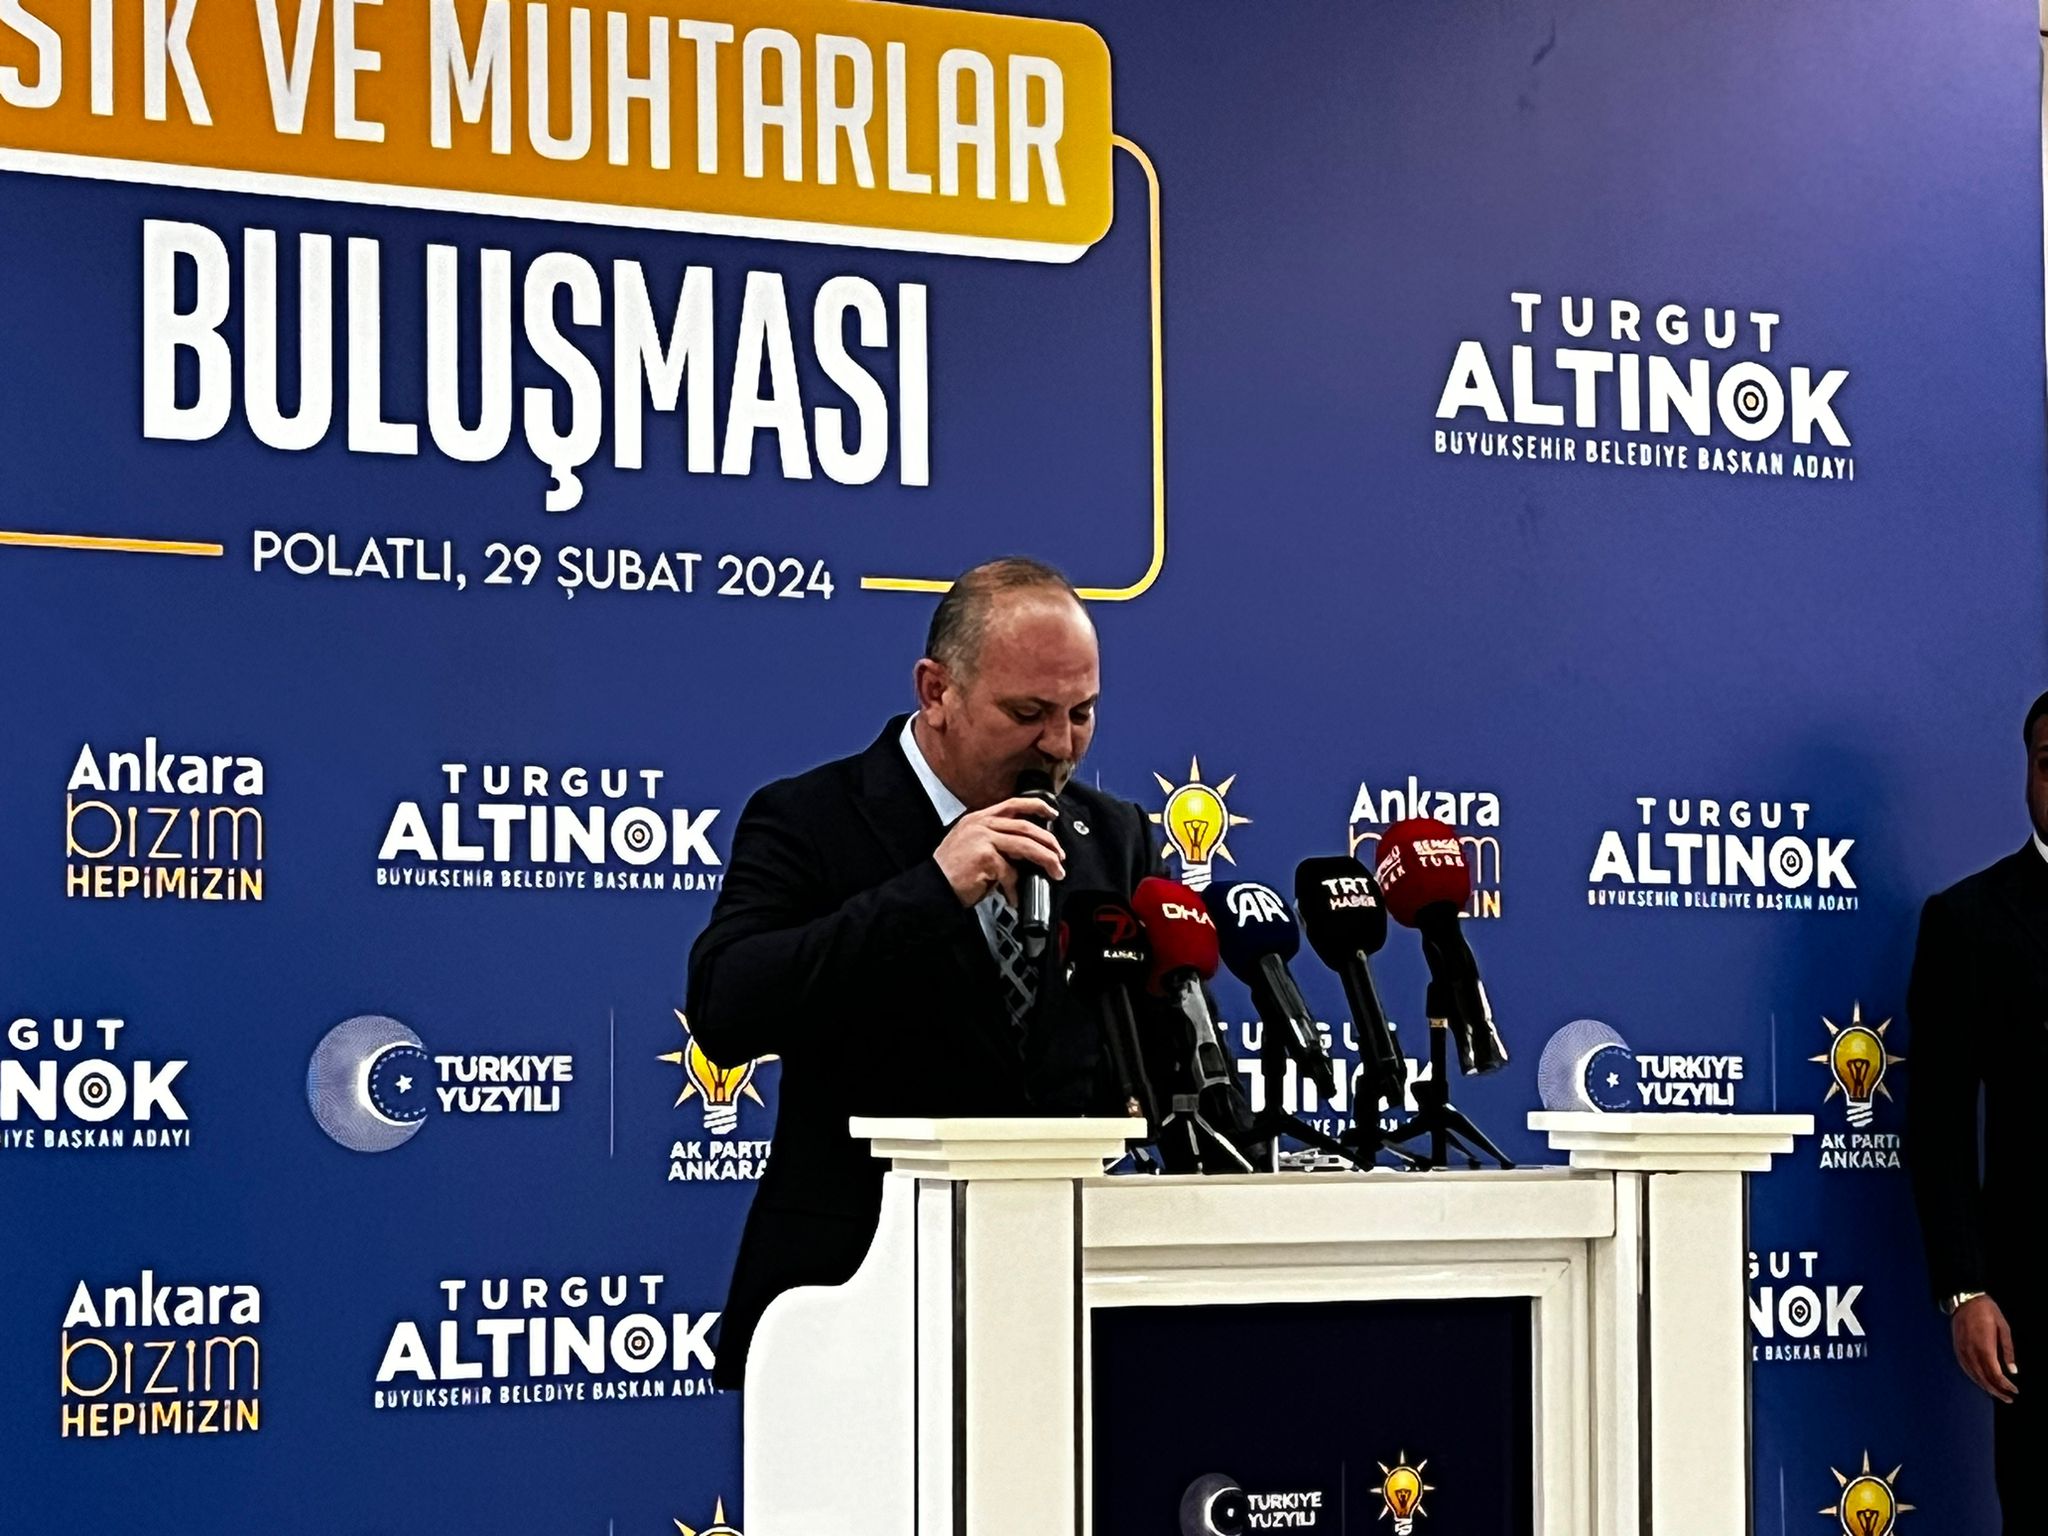 Cumhur İttifakı Ankara Büyükşehir Belediye Başkanı Altınok Polatlı'da Stk Ve Muhtarlarla Buluştu (4)